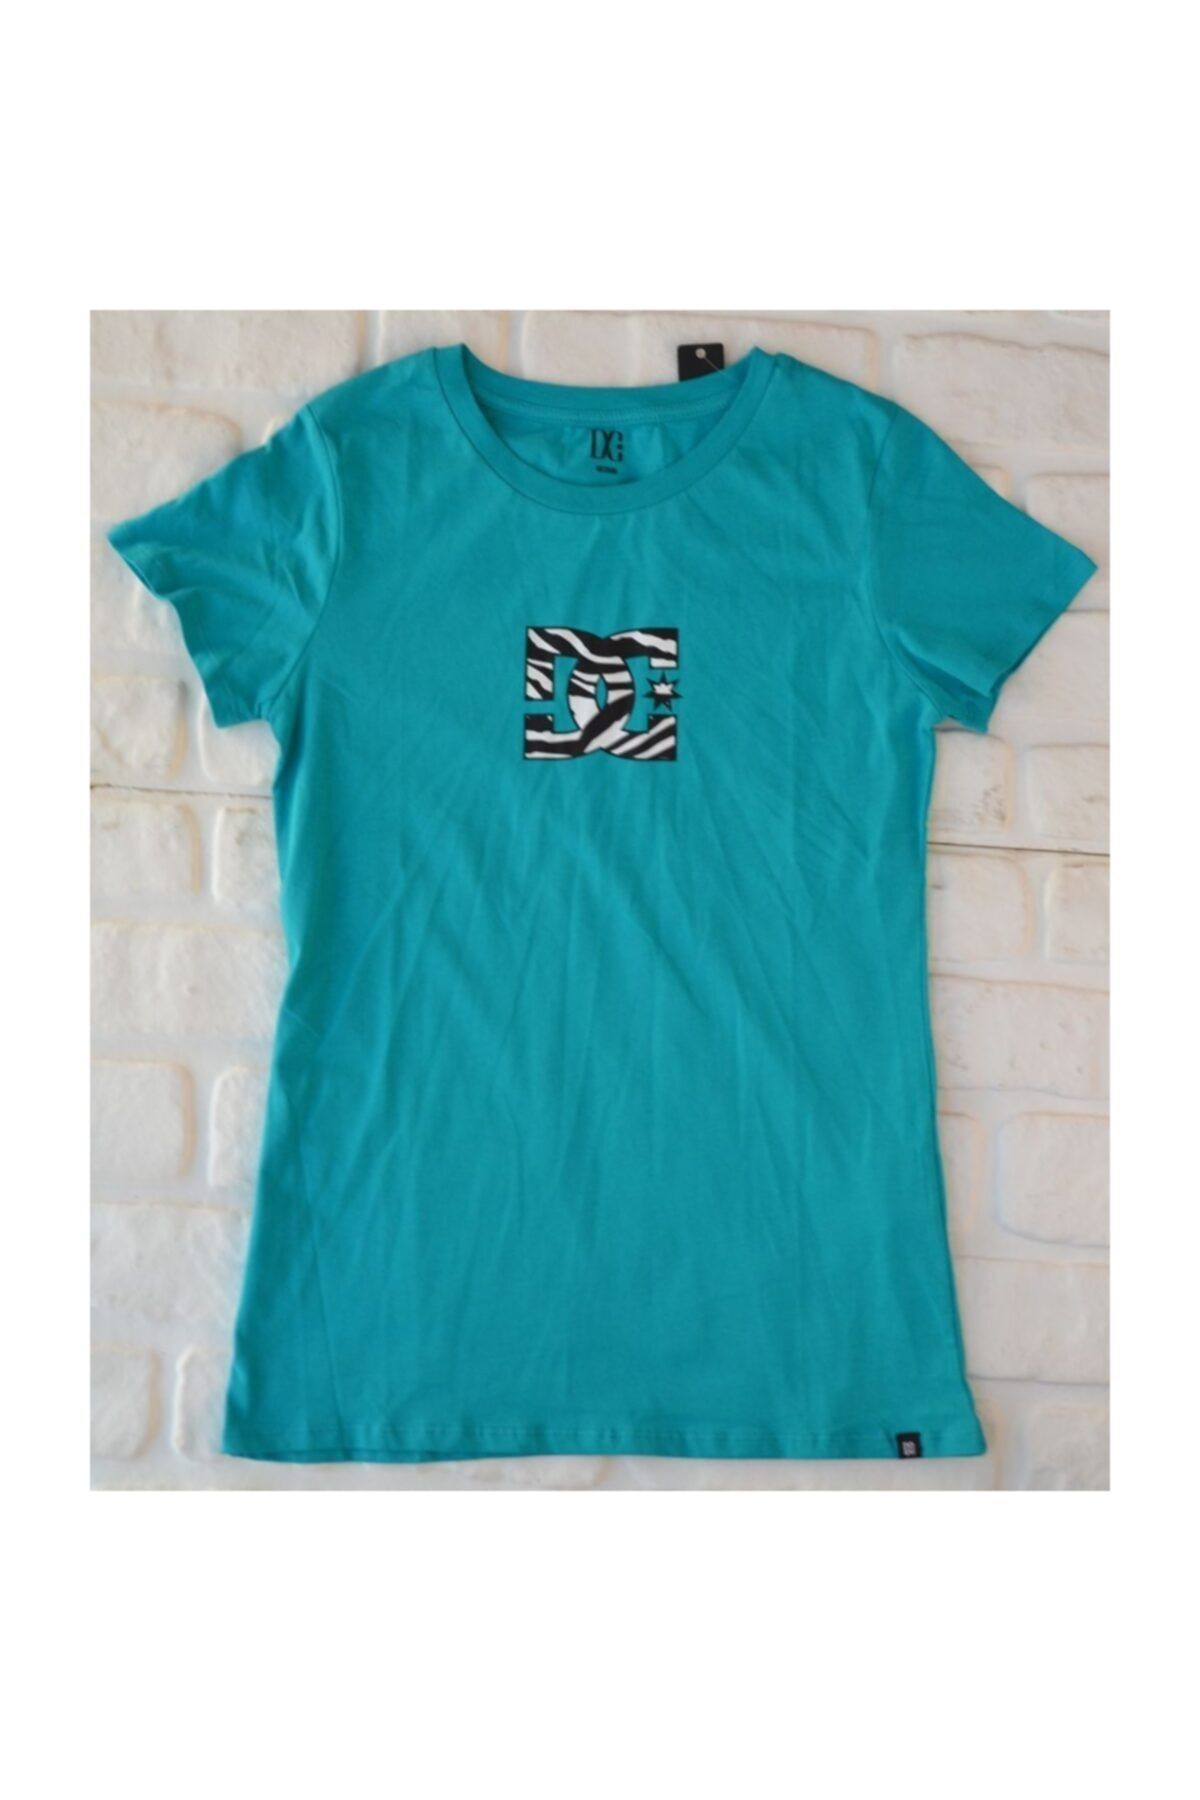 DC Zebra Logo Tee Trop Grn  Kadın Tişört